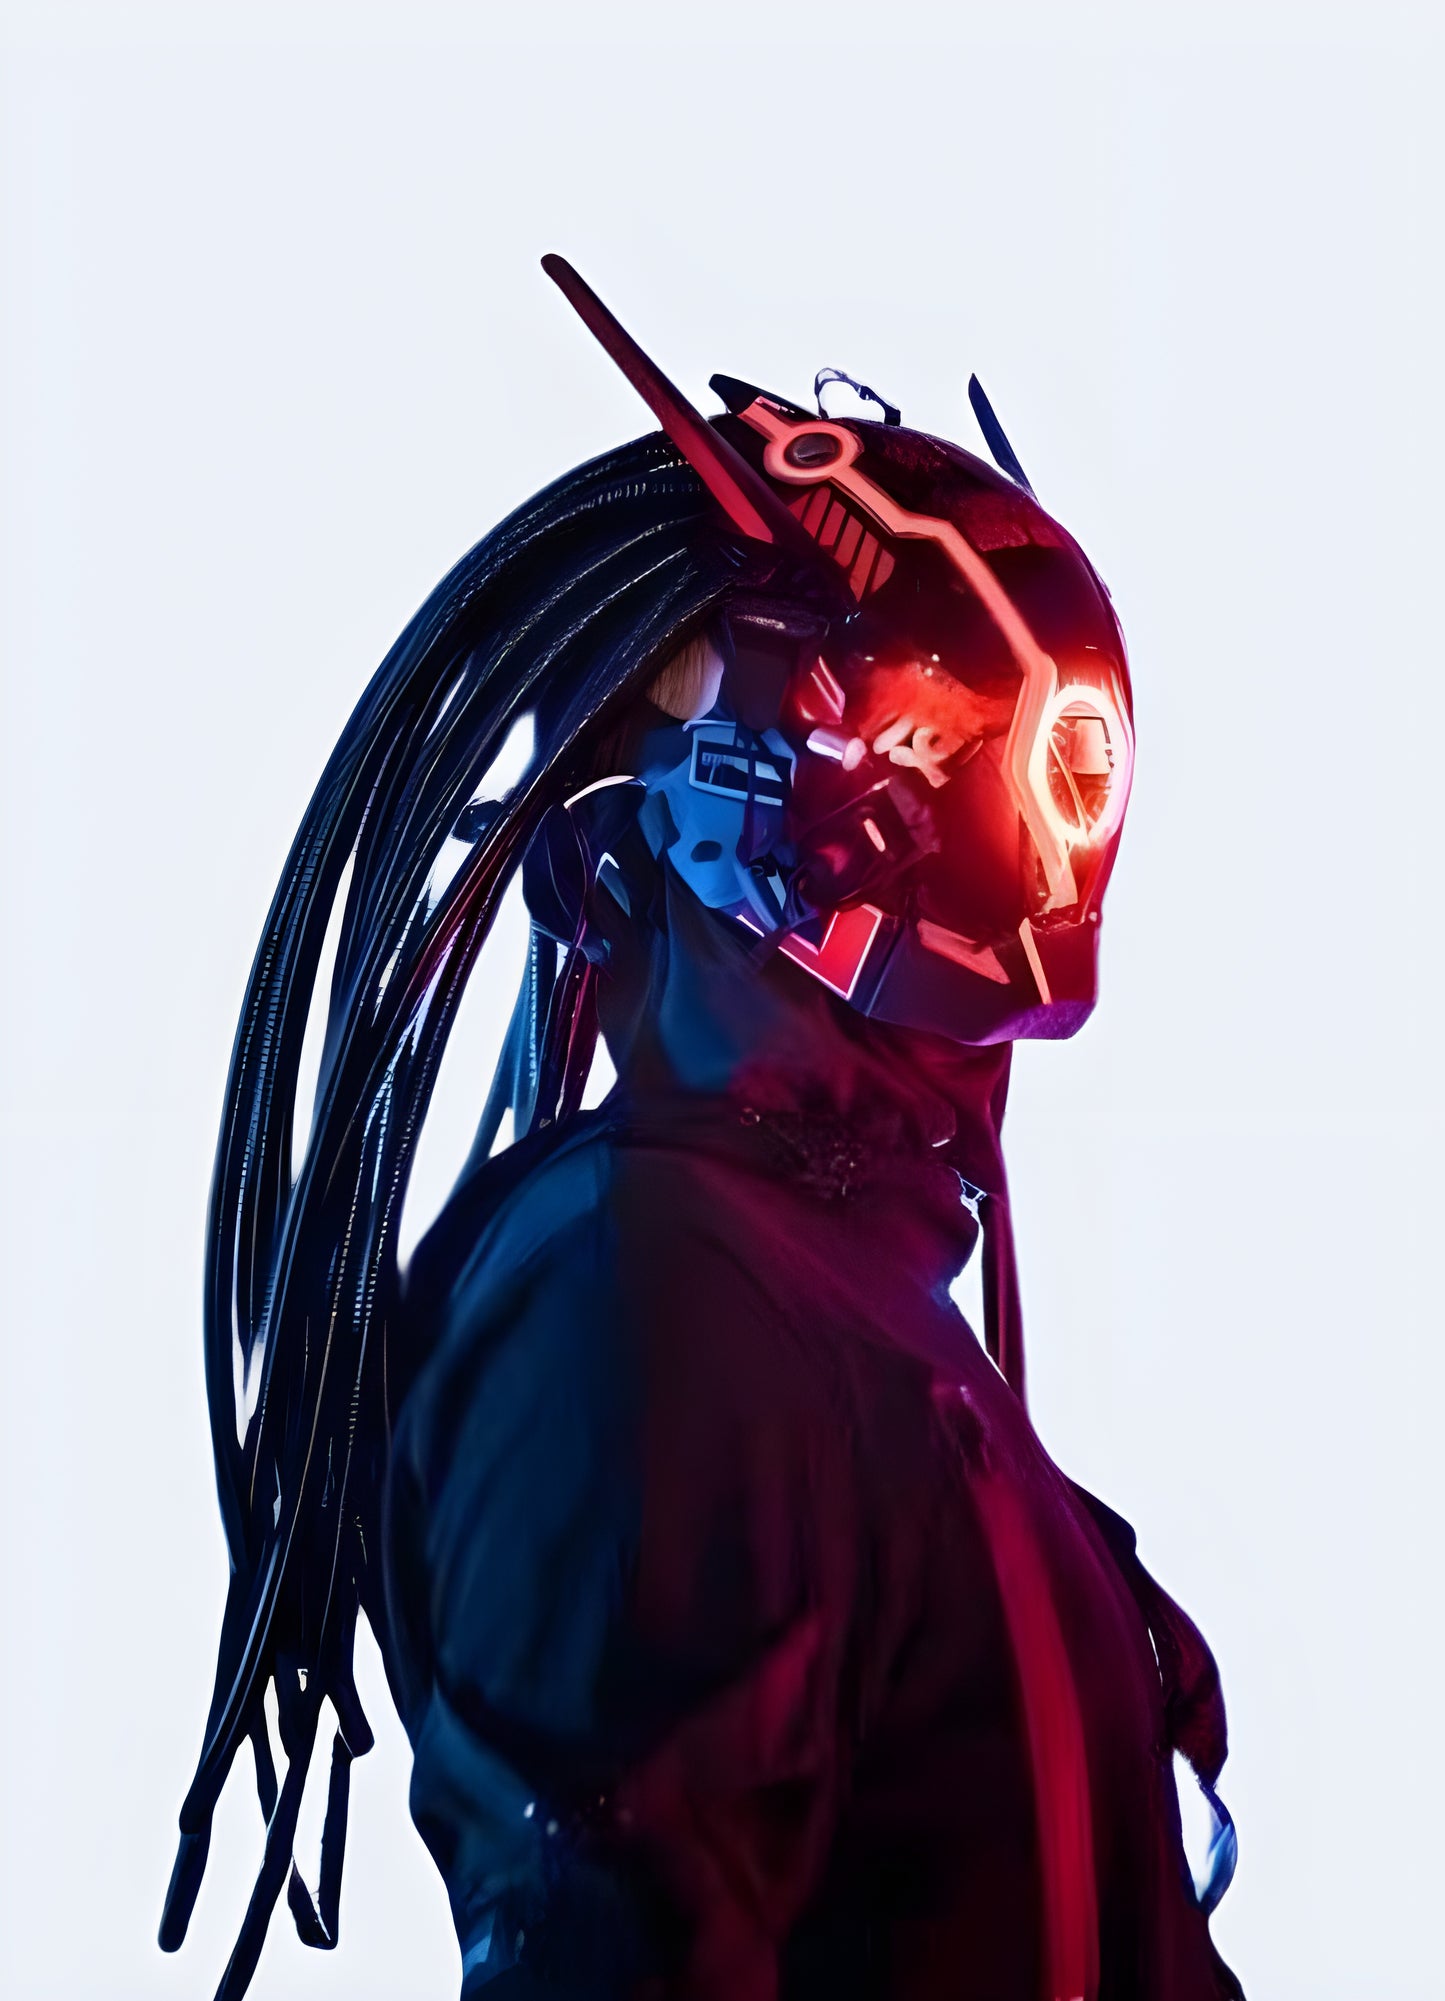 Padded lining allows comfortable wear cyberpunk samurai mask helmet.